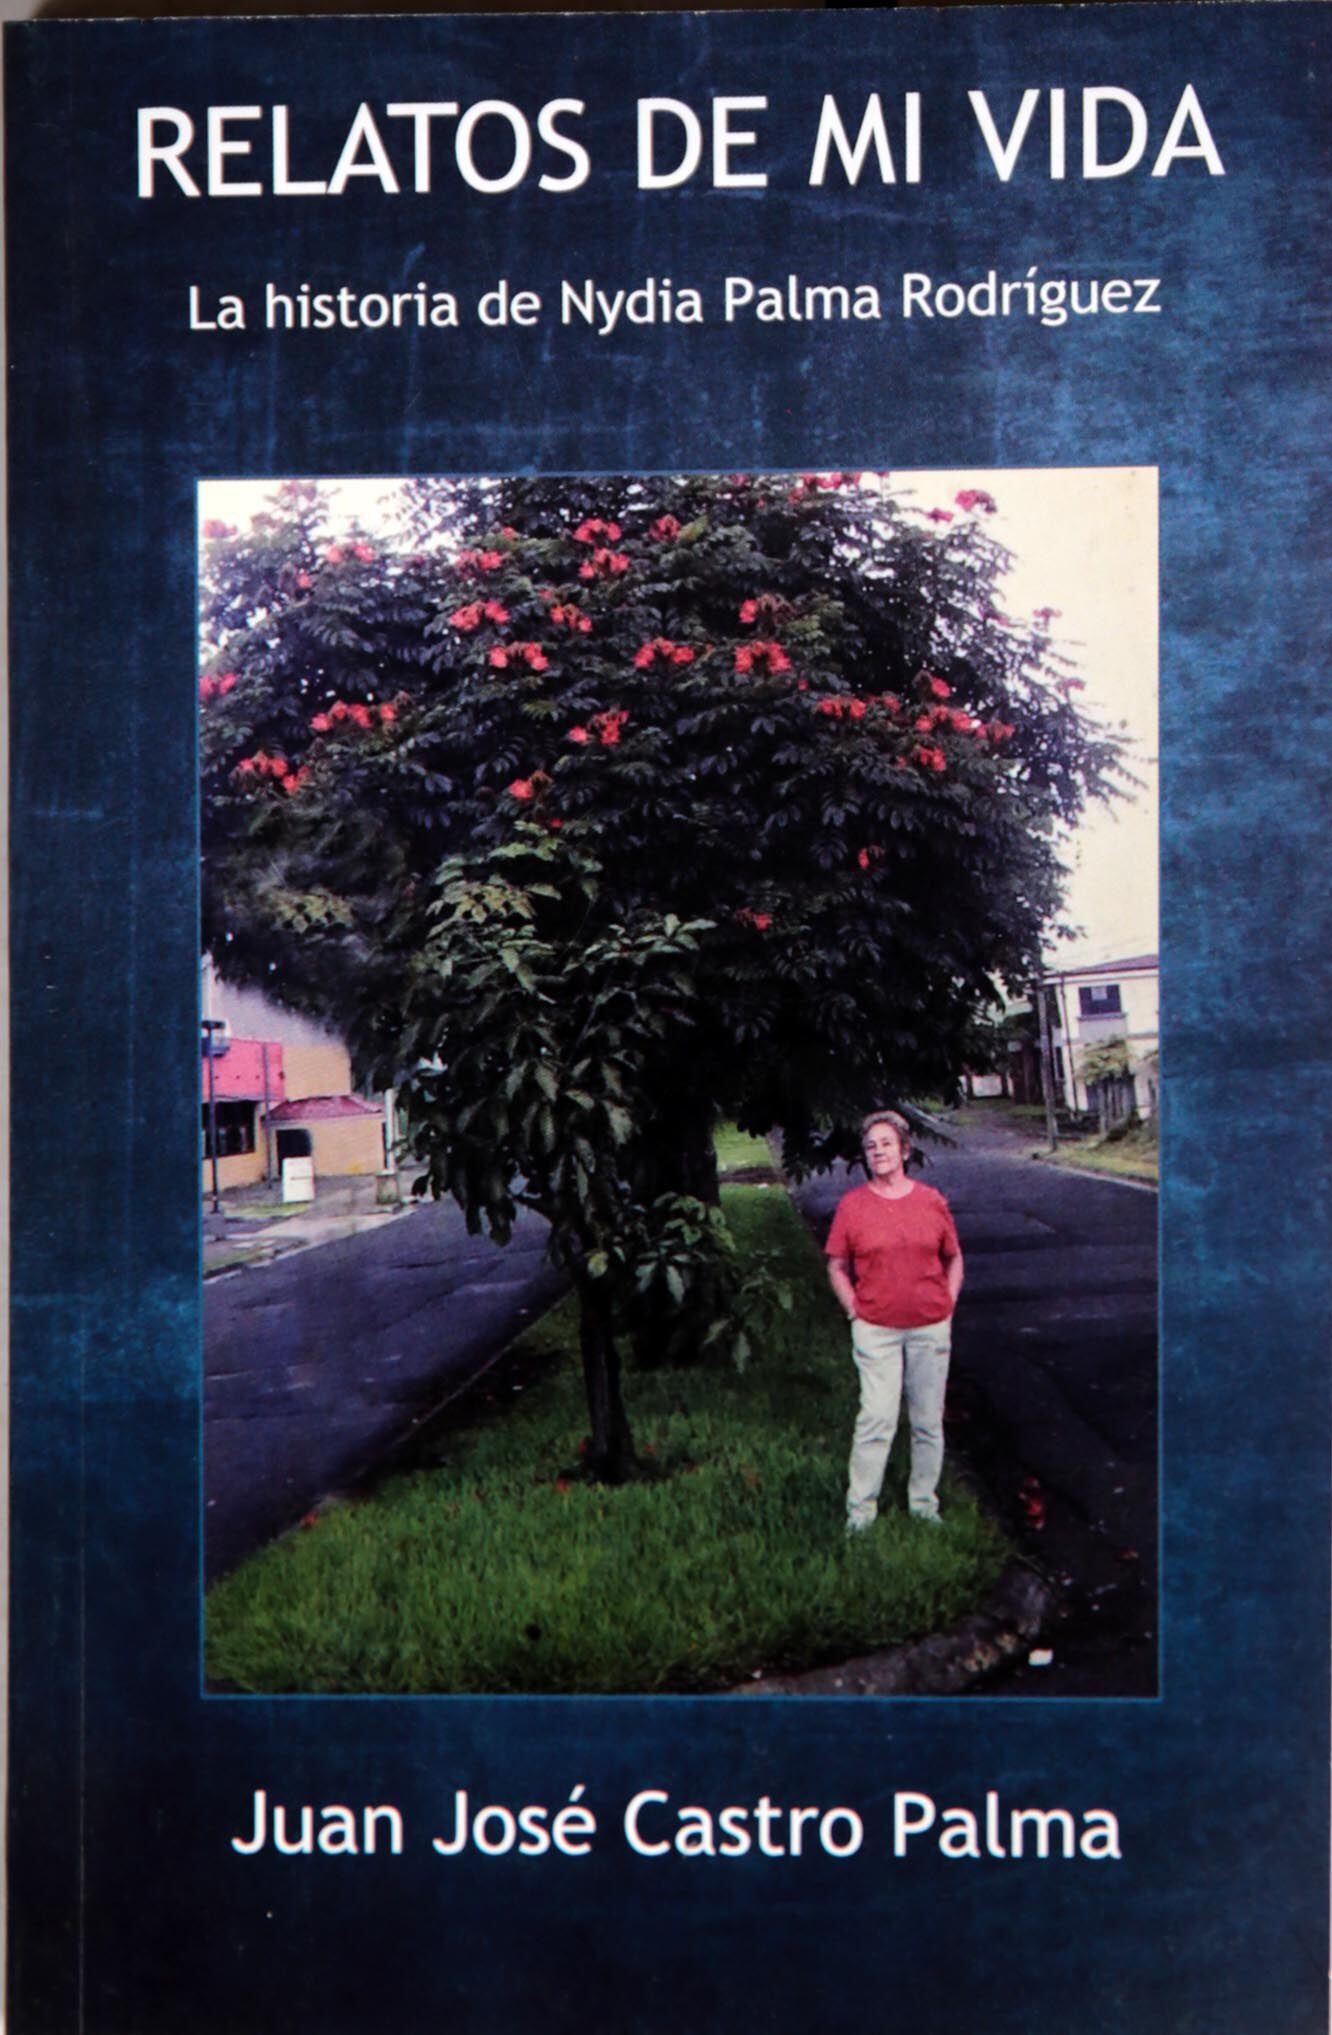 El libro 'Relatos de mi vida' tiene en la portada esta foto, en la que luce doña Nidya y su árbol cuando 